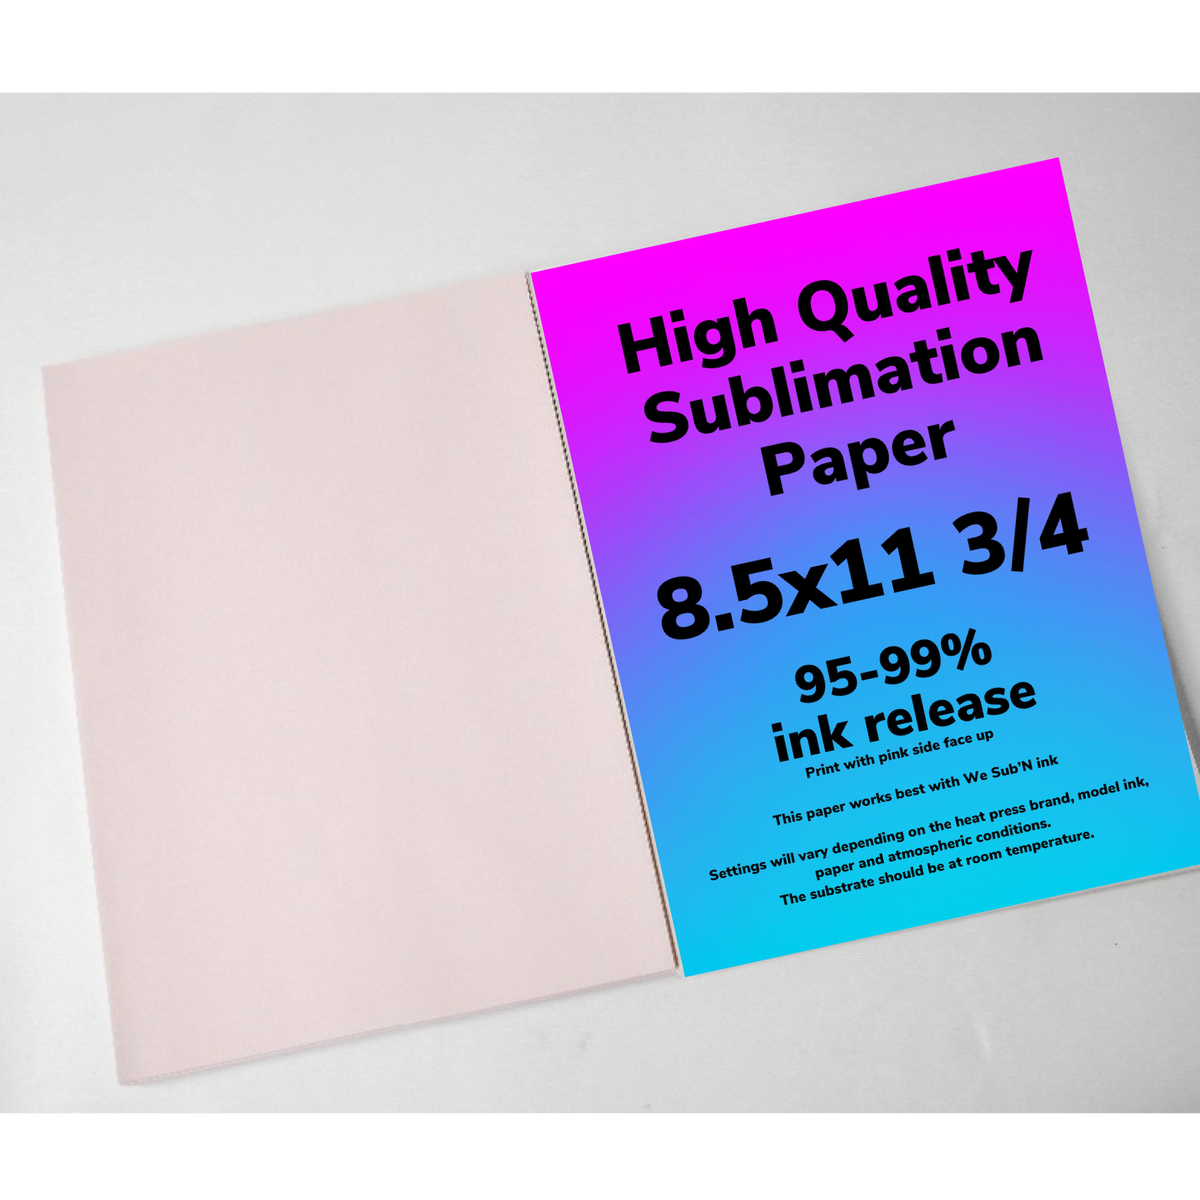 SUBLIMATION PAPER – The Pink Vendur